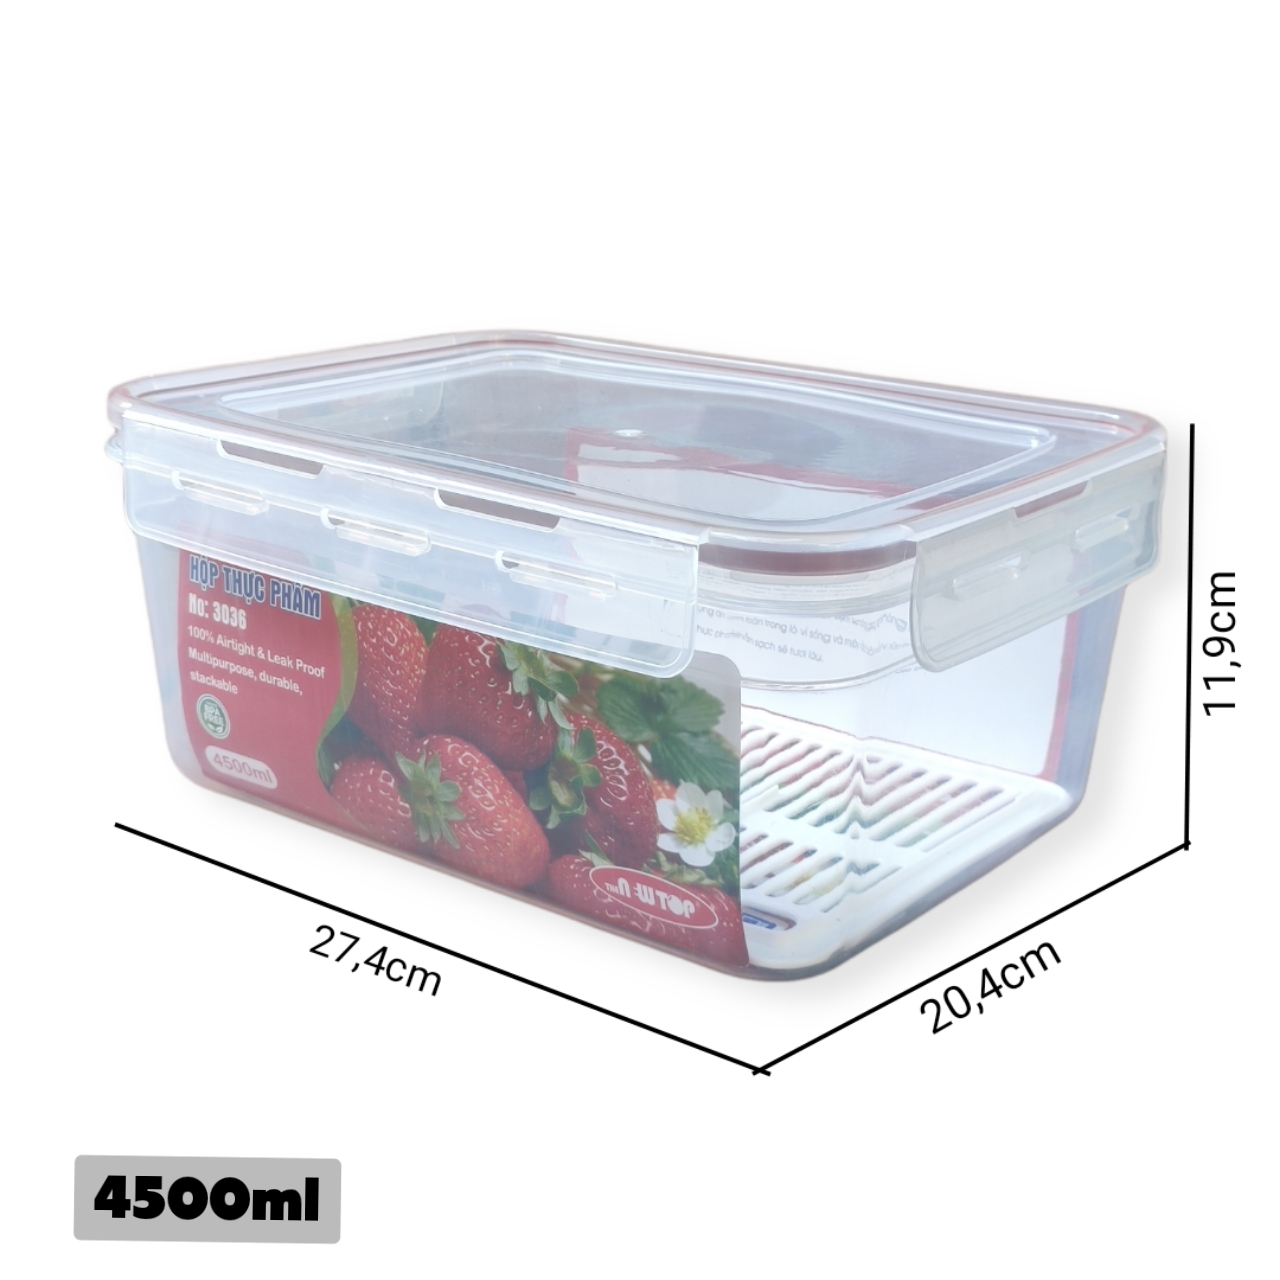 (Hàng cao cấp) Combo 2 hộp nhựa chữ nhật bảo quản thực phẩm Hàn Quốc (Full size) - Có khóa nắp 4 chiều zoong silicon chống tràn, phên chống ẩm